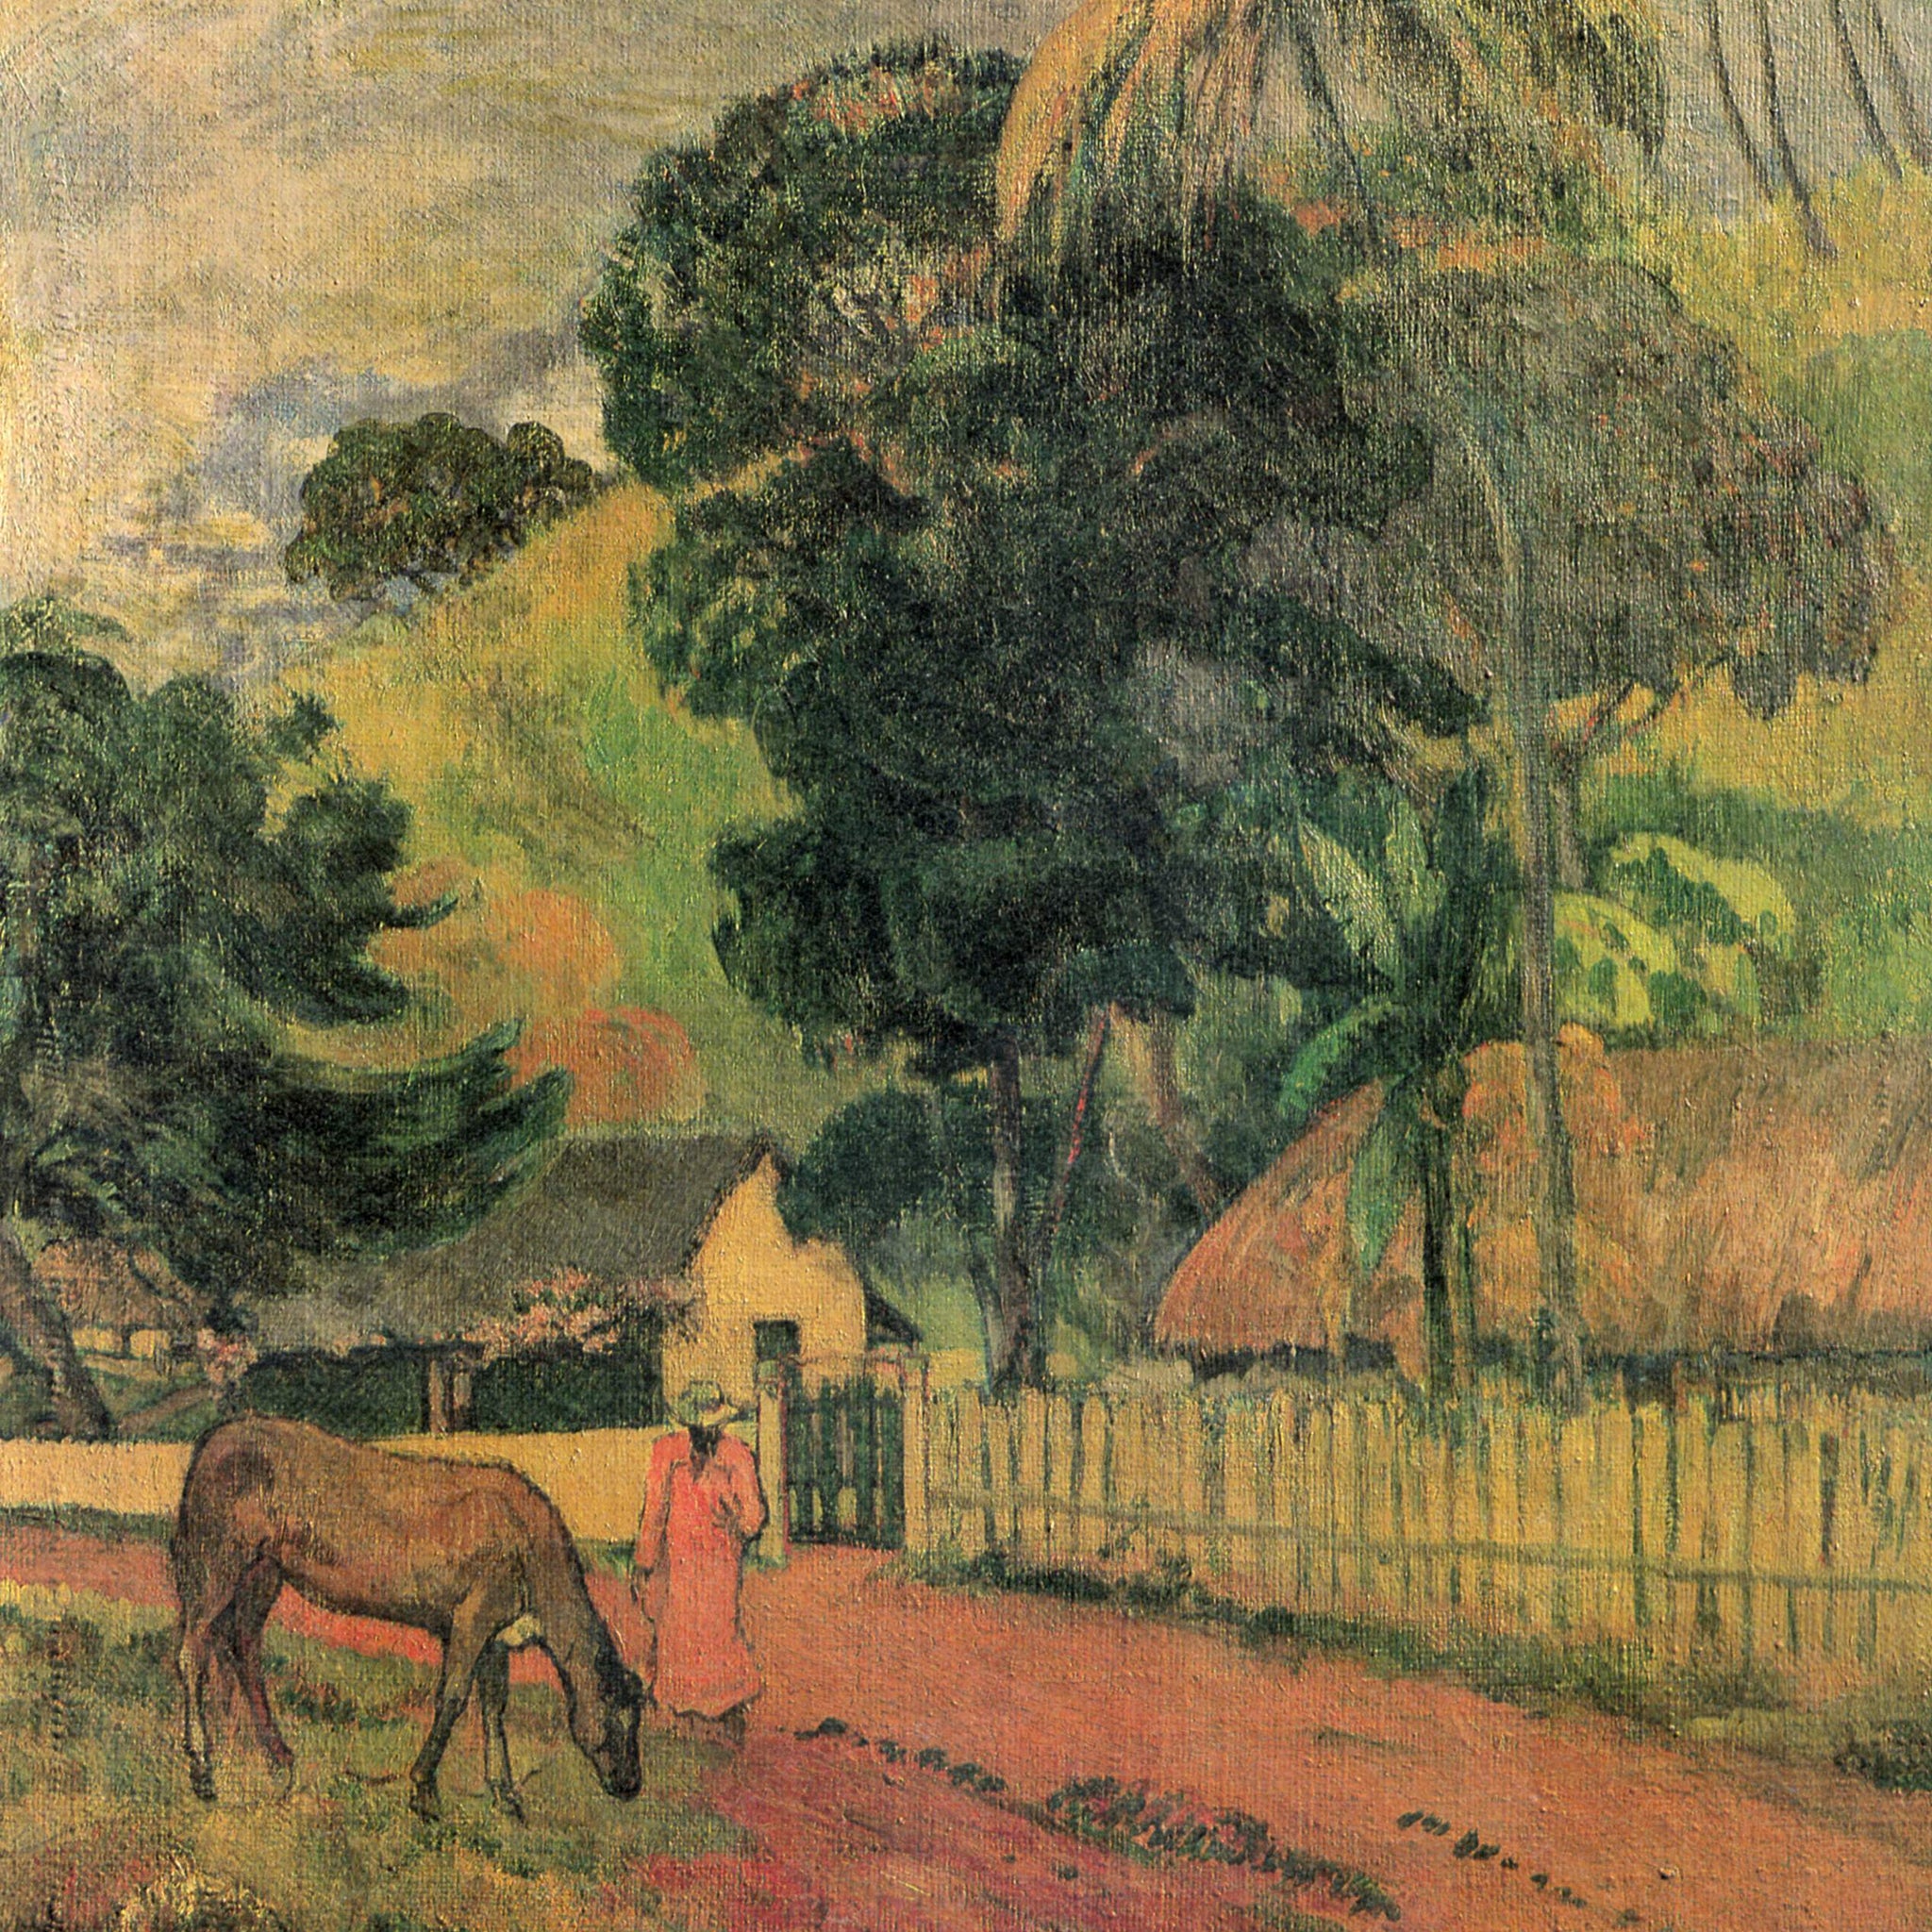 Le cheval sur le chemin gauguin - Paul Gauguin